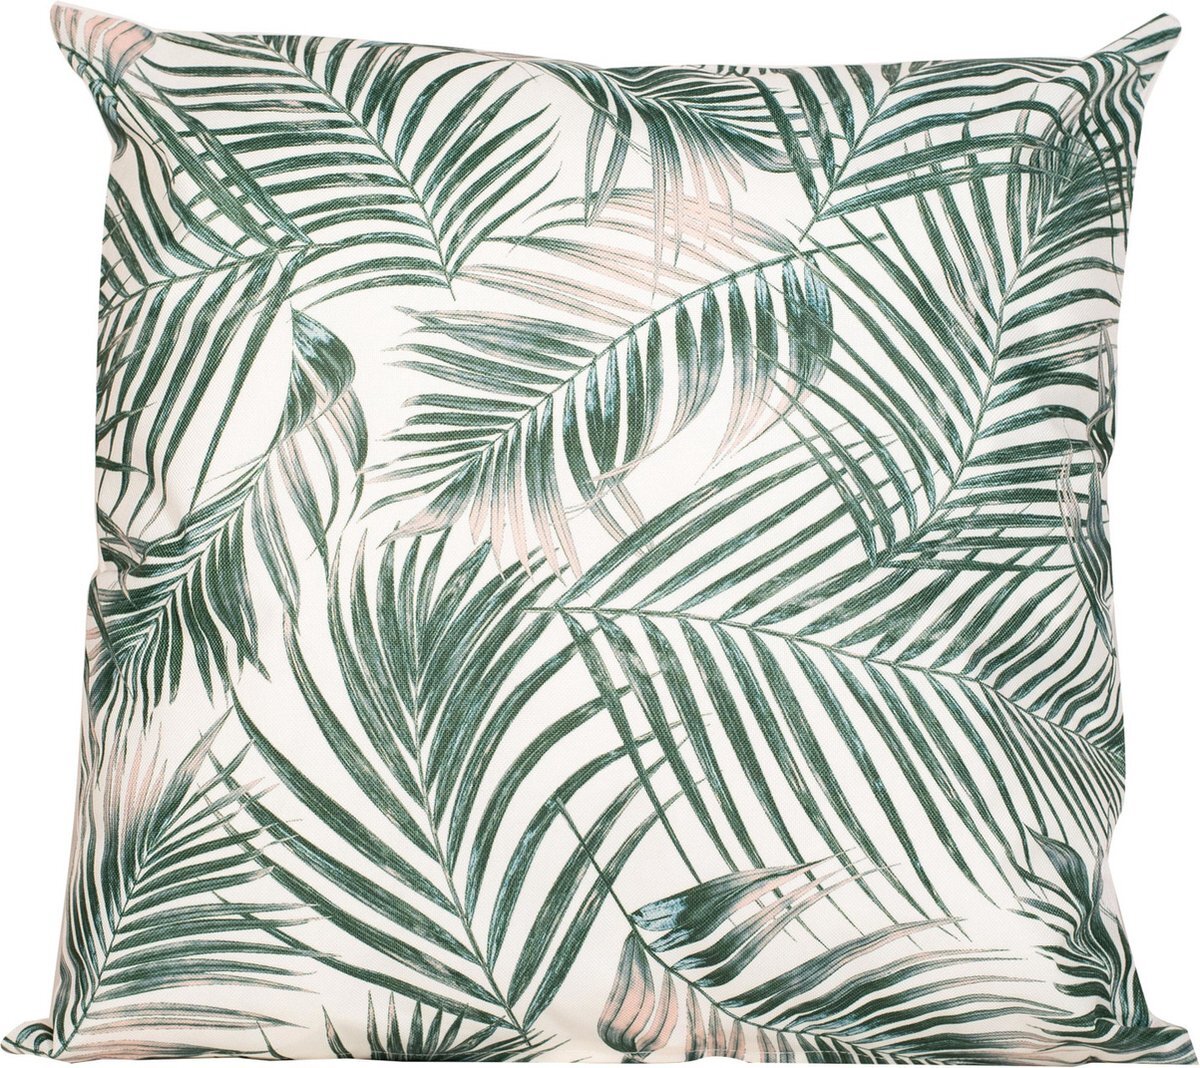 Anna's Collection Sierkussen voor binnen en buiten - palm bladeren print - 45 x 45 cm - Urban jungle tuin/huis kussens